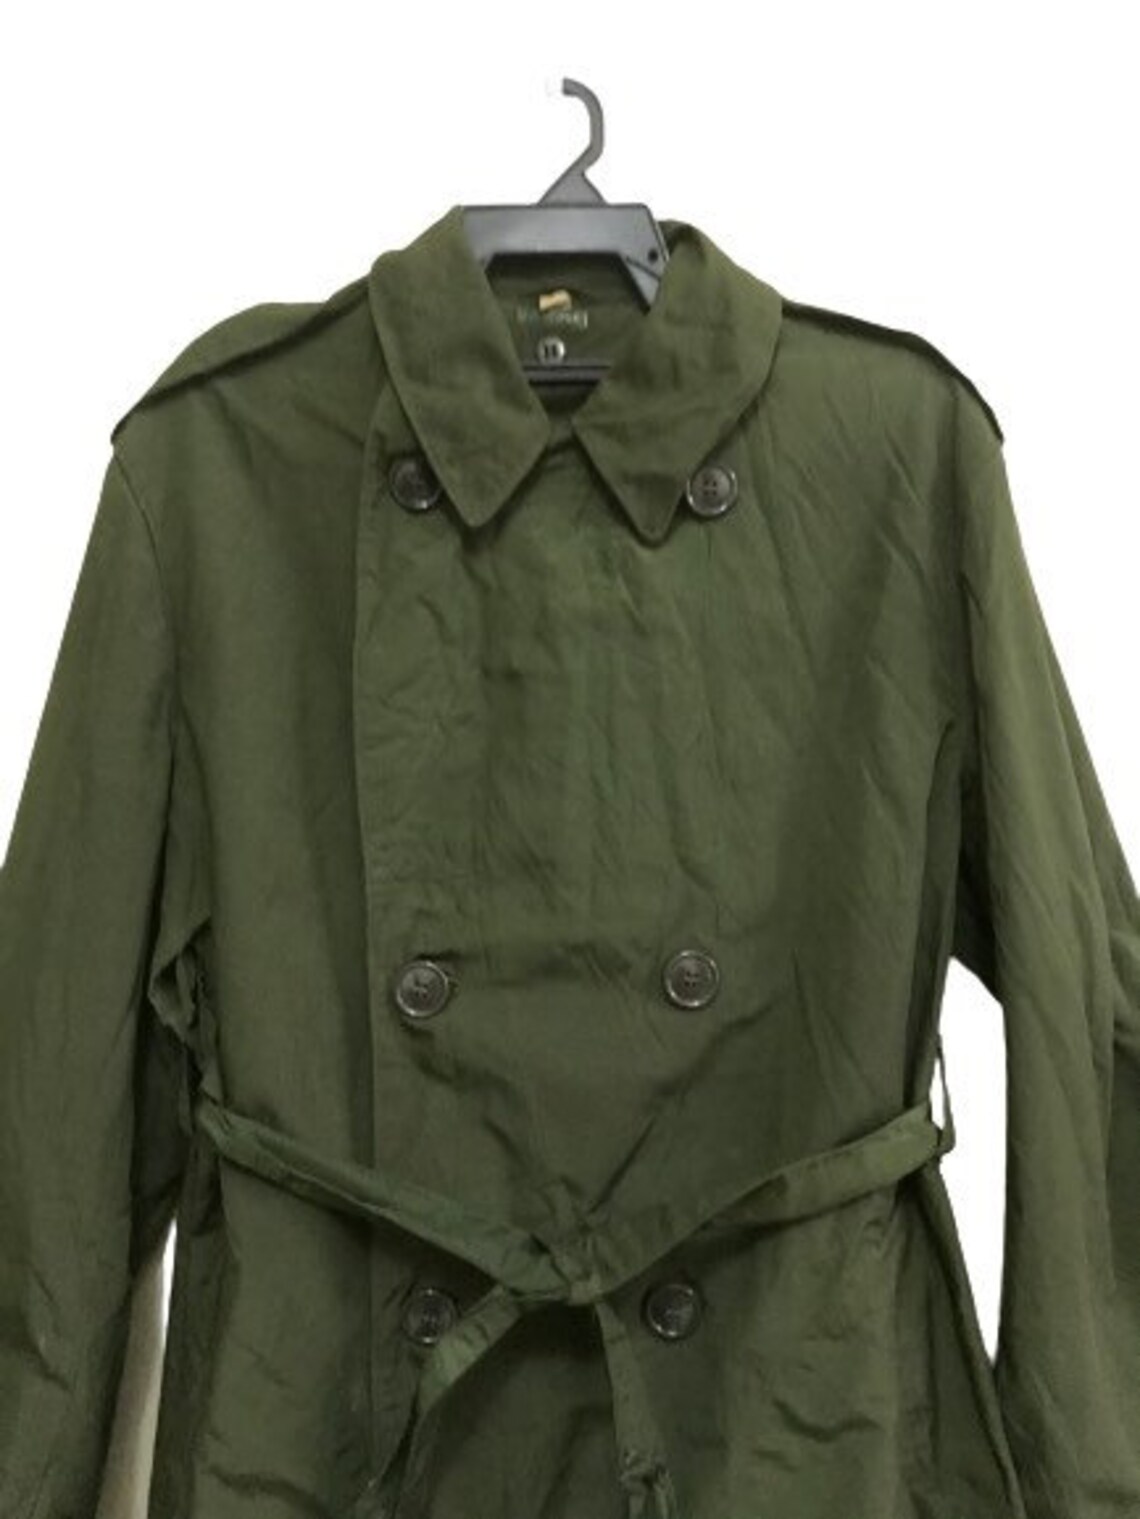 MEGA SALE Vintage 50s Raincoat M-1950 Usmc Us Army Military | Etsy